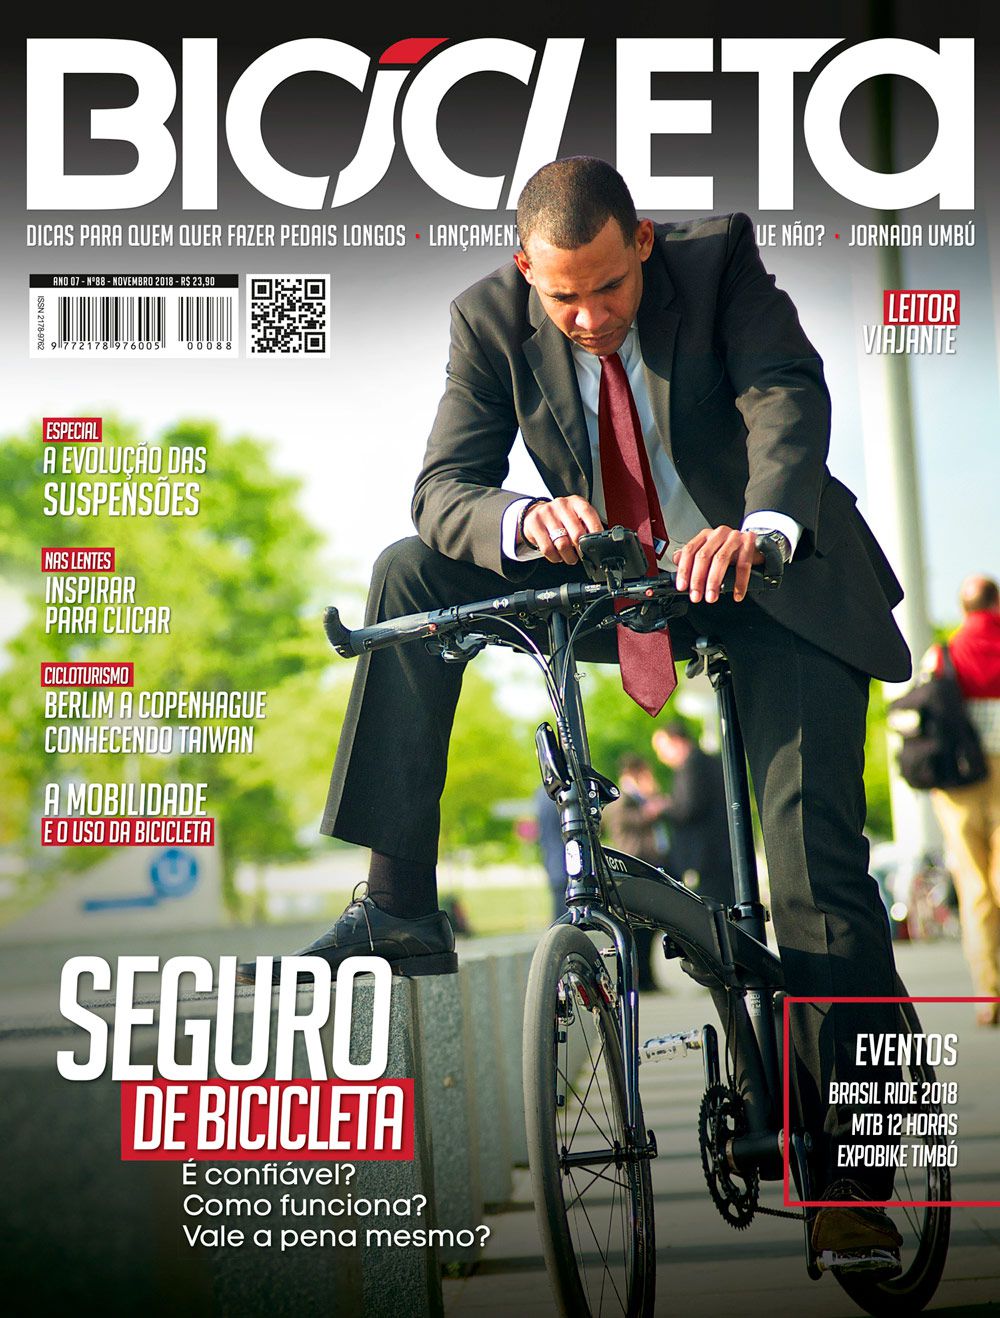 Revista Bicicleta edição 88 - Novembro 2018 - MTB 12 horas - pg 70 a 74